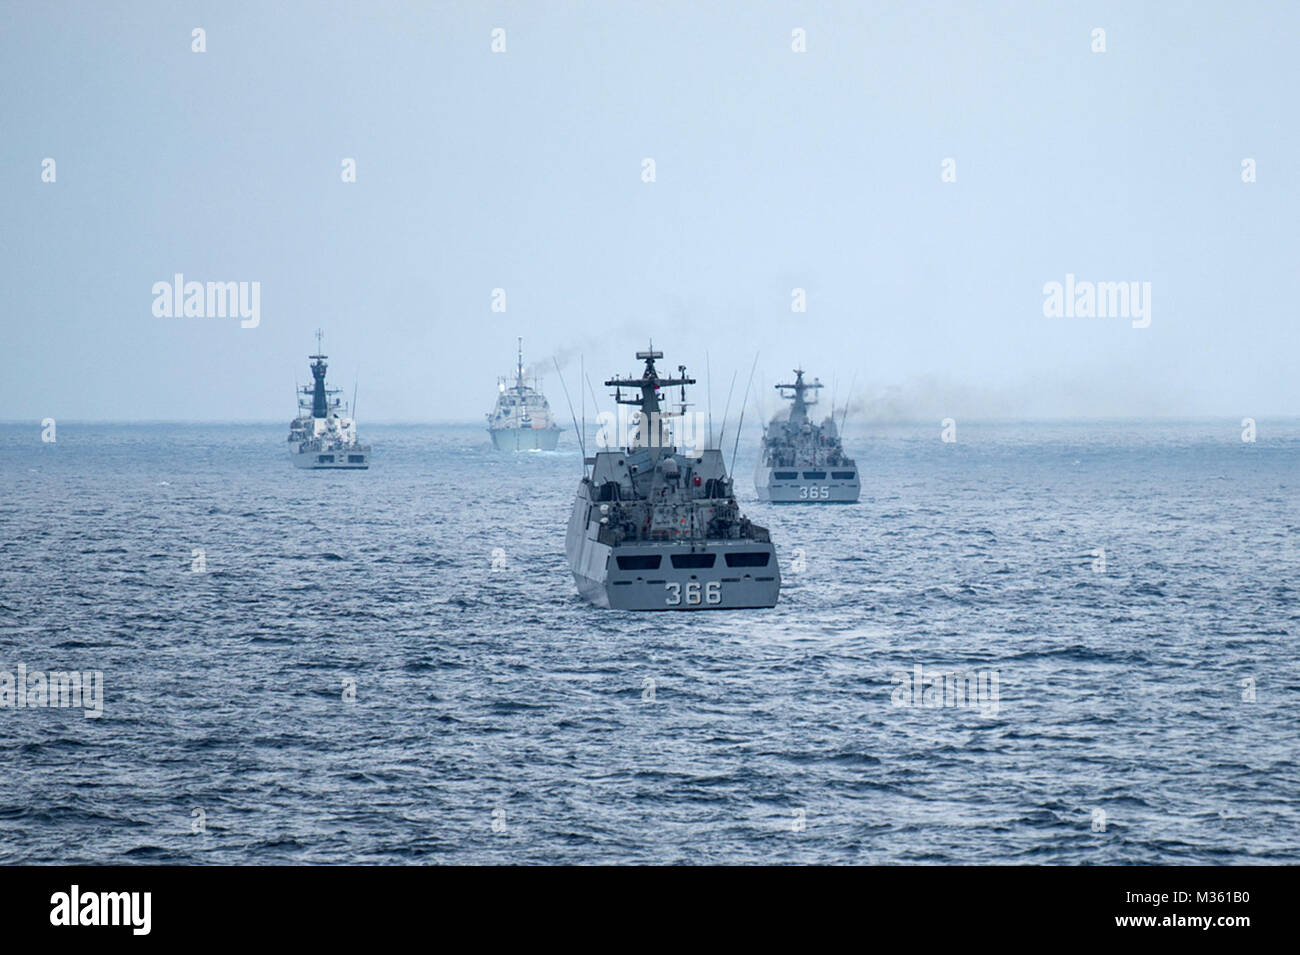 150807-N-ONU OCÉANO ÍNDICO259-174 (Ago. 7, 2015), buques de guerra de los EE.UU. y navíos indonesios realizar un ejercicio de familiarización con el submarino a flote durante la coordinación y preparación de la formación (quilate) Indonesia 2015. En el año 21, CARAT es una serie de ejercicios bilaterales anuales con la Marina de los EE.UU., la Infantería de Marina y las fuerzas armadas de nueve países socios incluidos Bangladesh, Brunei, Camboya, Indonesia, Malasia, Filipinas, Singapur, Tailandia y Timor-Leste. (Ee.Uu. Navy photo by Mass Communication Specialist 3ª clase Alonzo M. Archer/liberado) nosotros y navíos indonesios conducta Submar Foto de stock